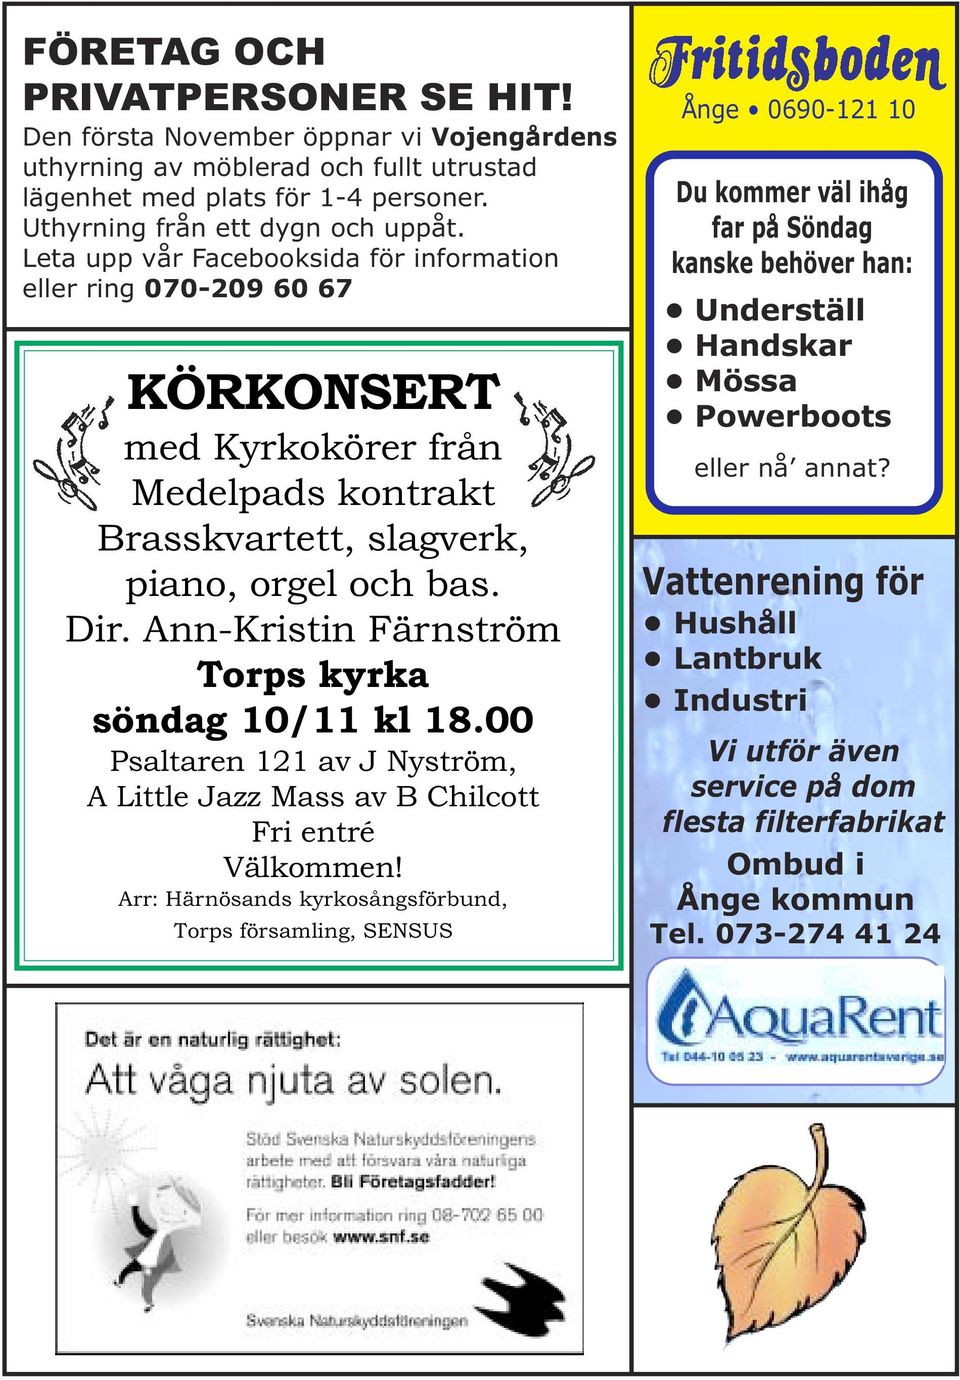 Ann-Kristin Färnström Torps kyrka söndag 10/11 kl 18.00 Psaltaren 121 av J Nyström, A Little Jazz Mass av B Chilcott Fri entré Välkommen!